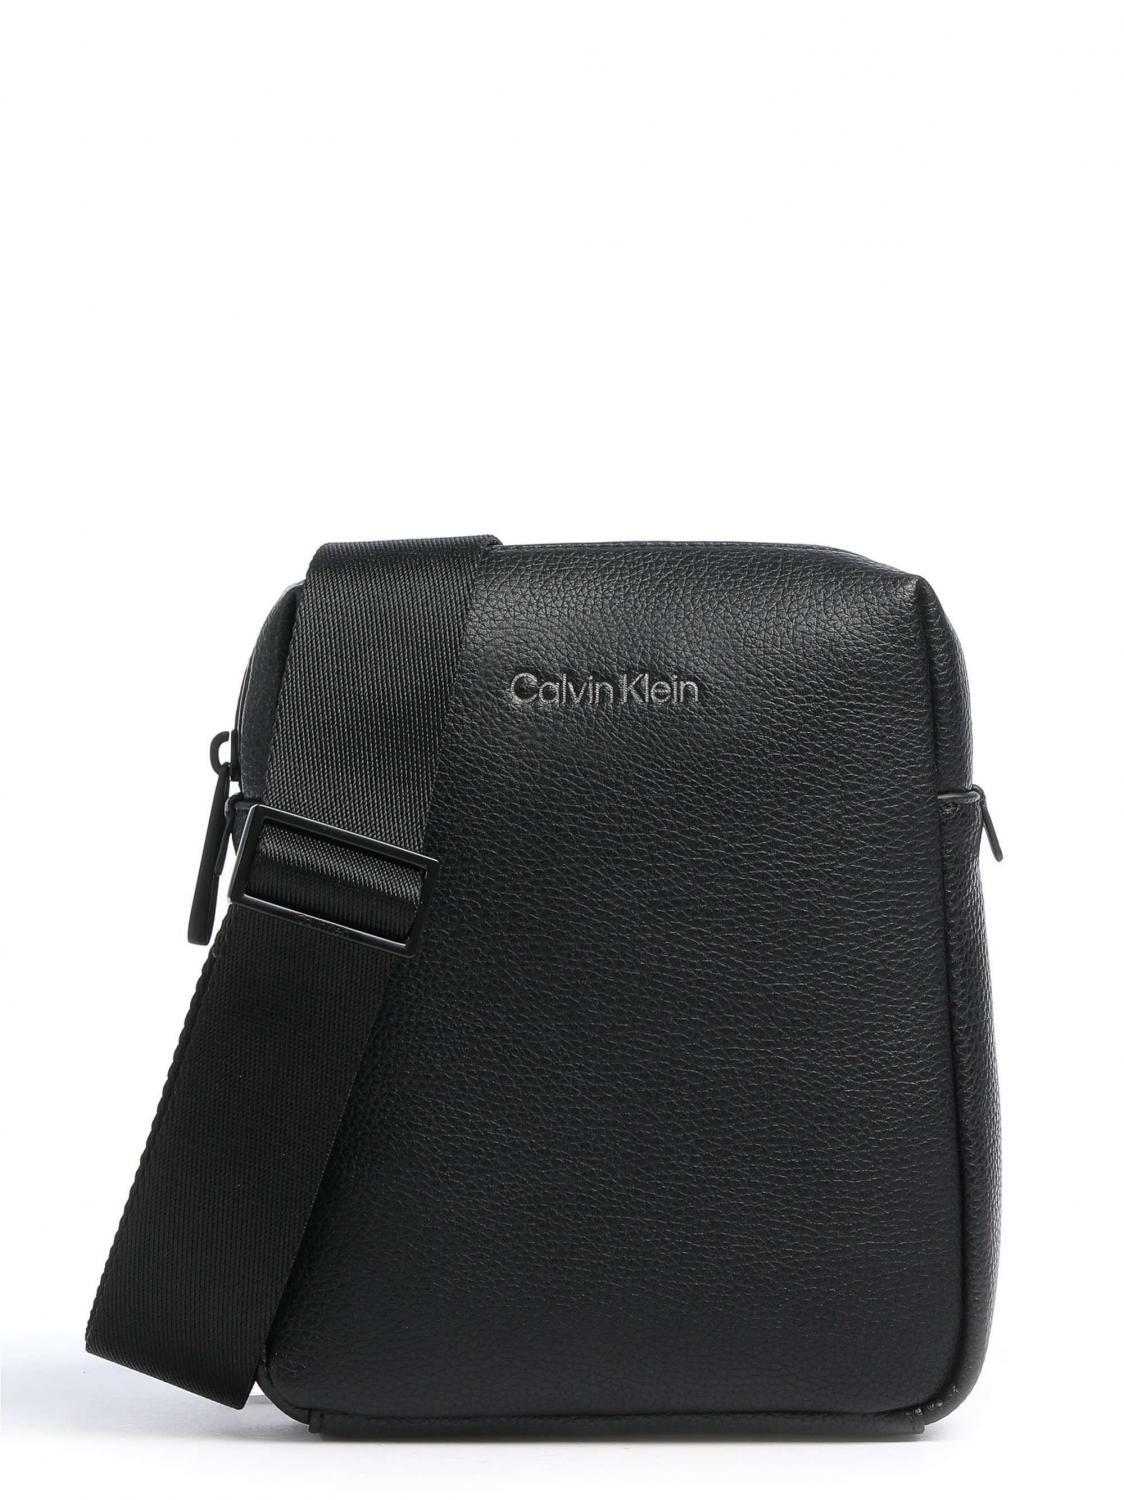 Entretener Personal Absoluto Calvin Klein Ck Must Bolso De Hombre Ckblack - ¡Compra En Le Sac Outlet!